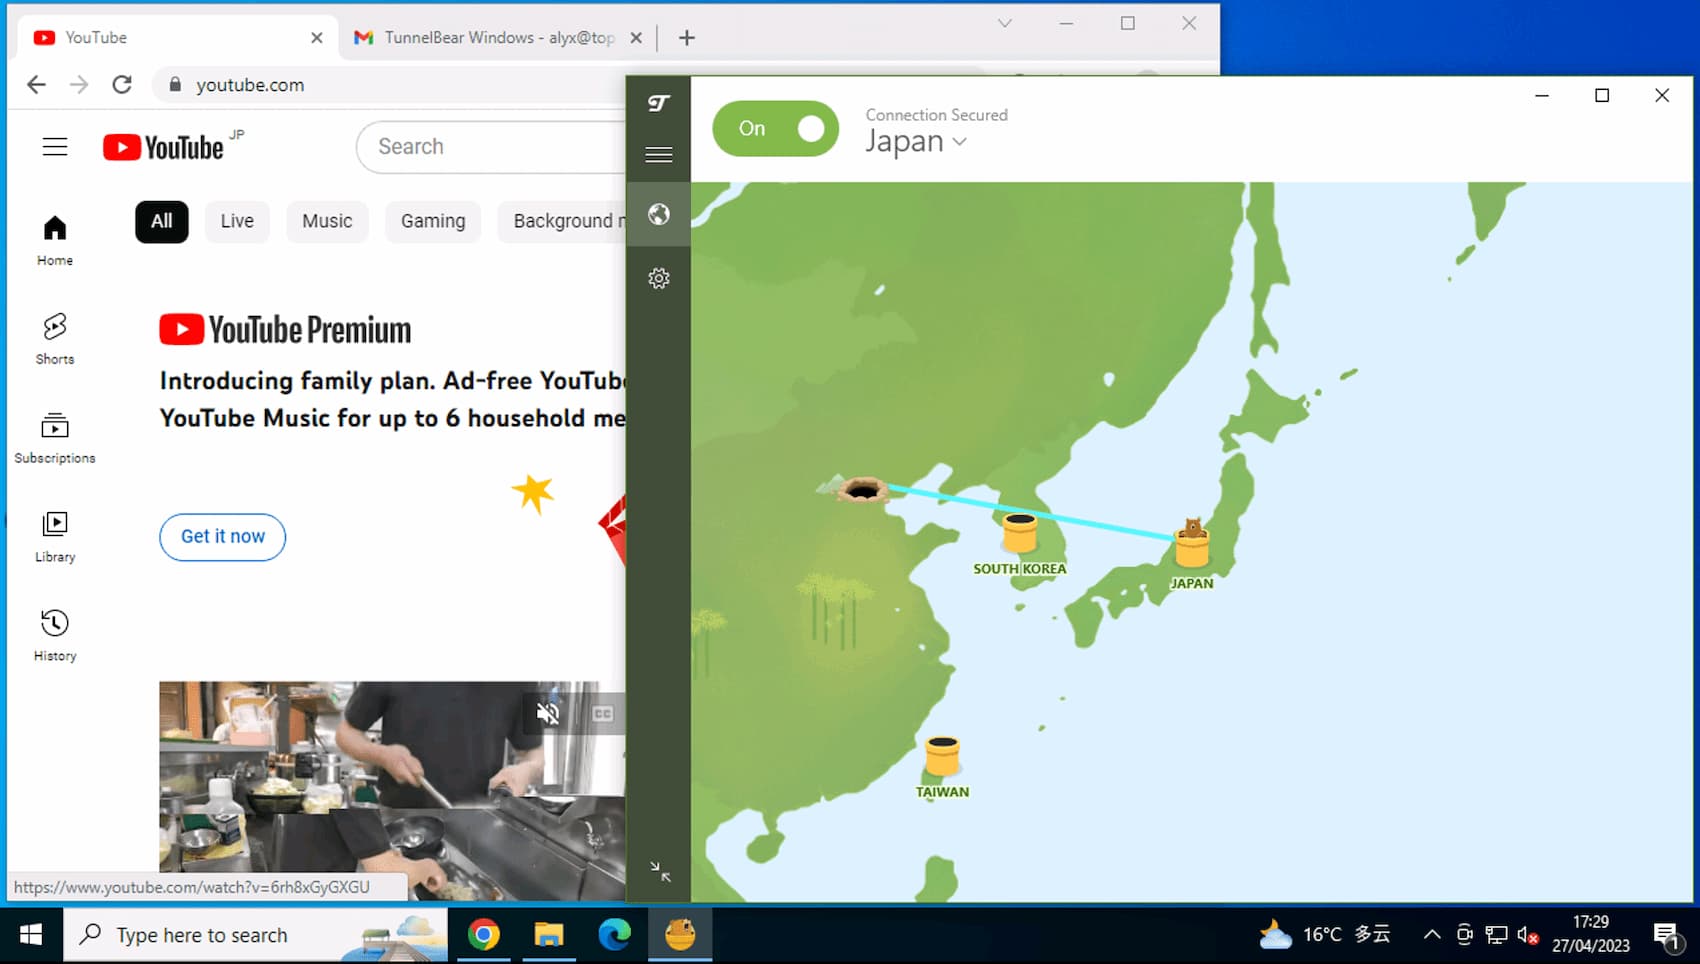 Nasz zdalny komputer w Chinach pokazuje, że TunnelBear ominął zaporę sieciową i odblokował YouTube na połączeniu z japońskim serwerem.